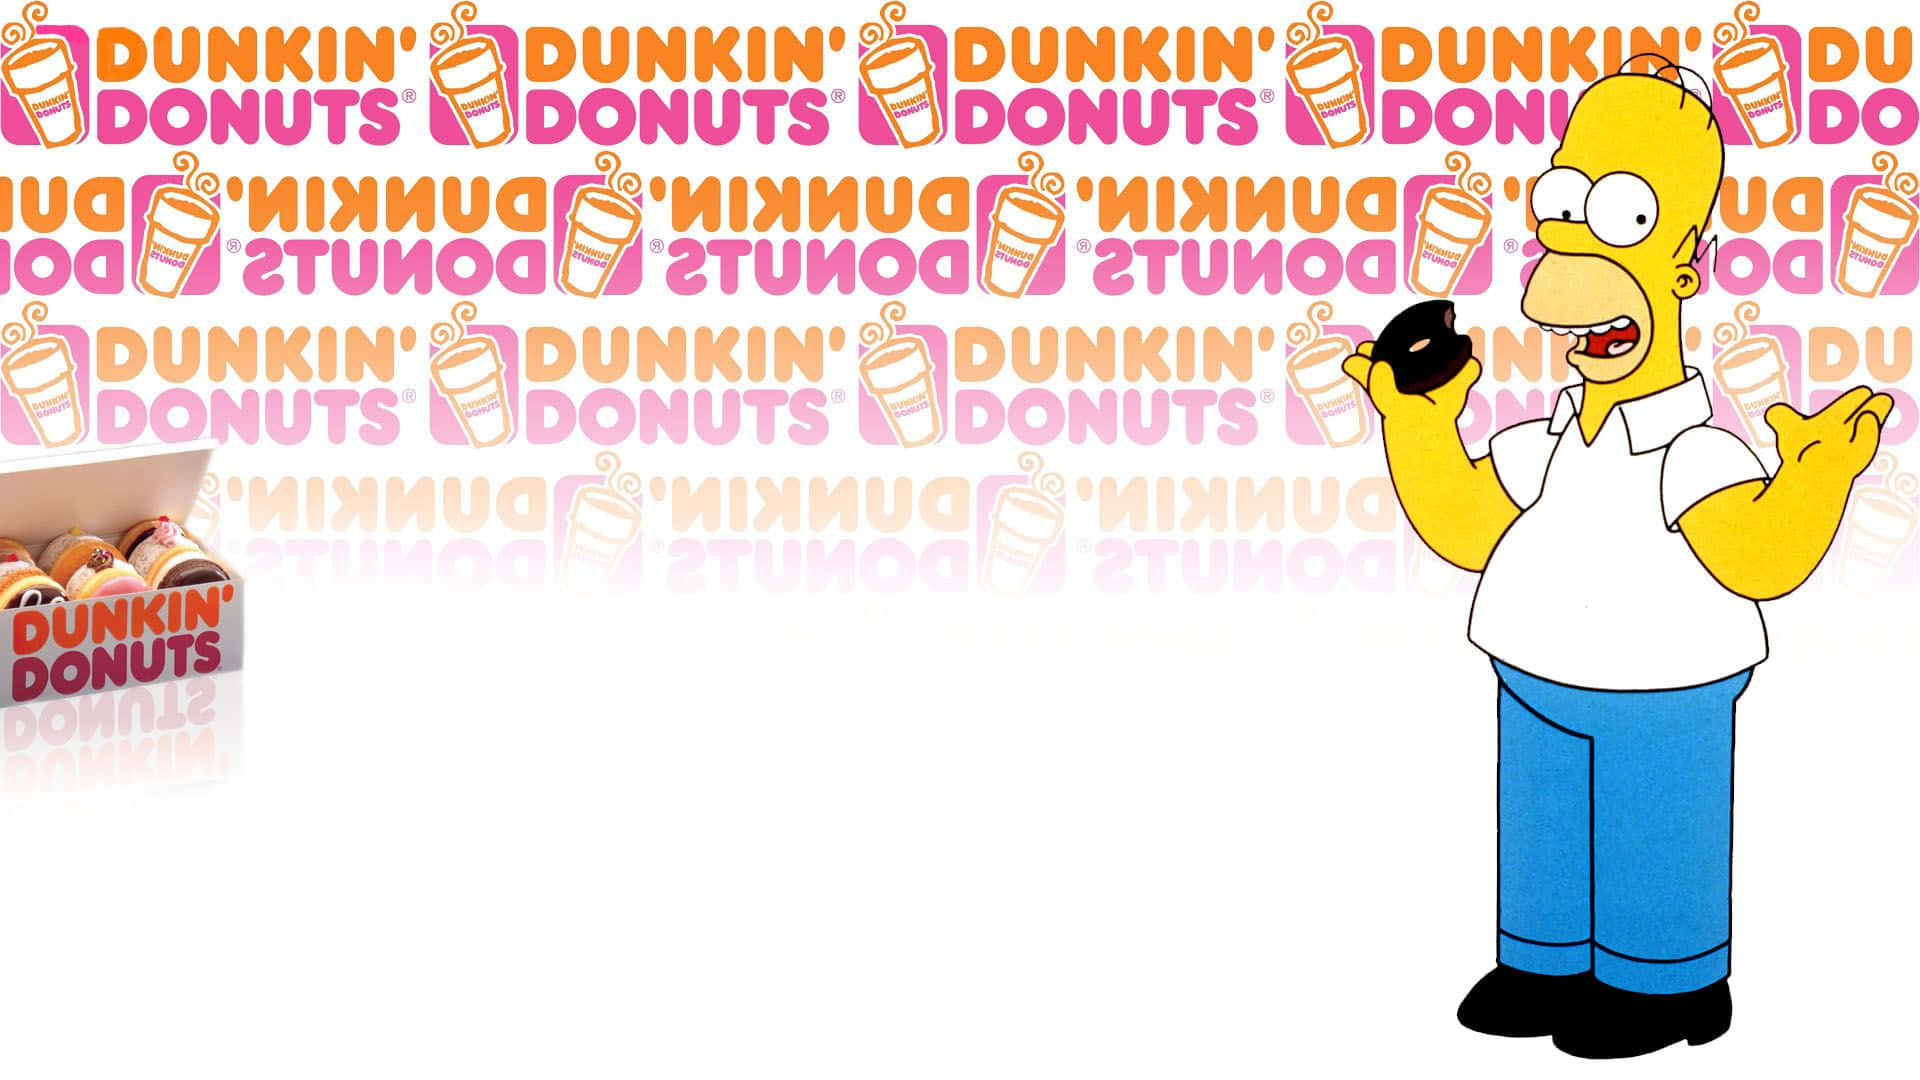 ¡satisfacetus Antojos Con Dunkin Donuts!